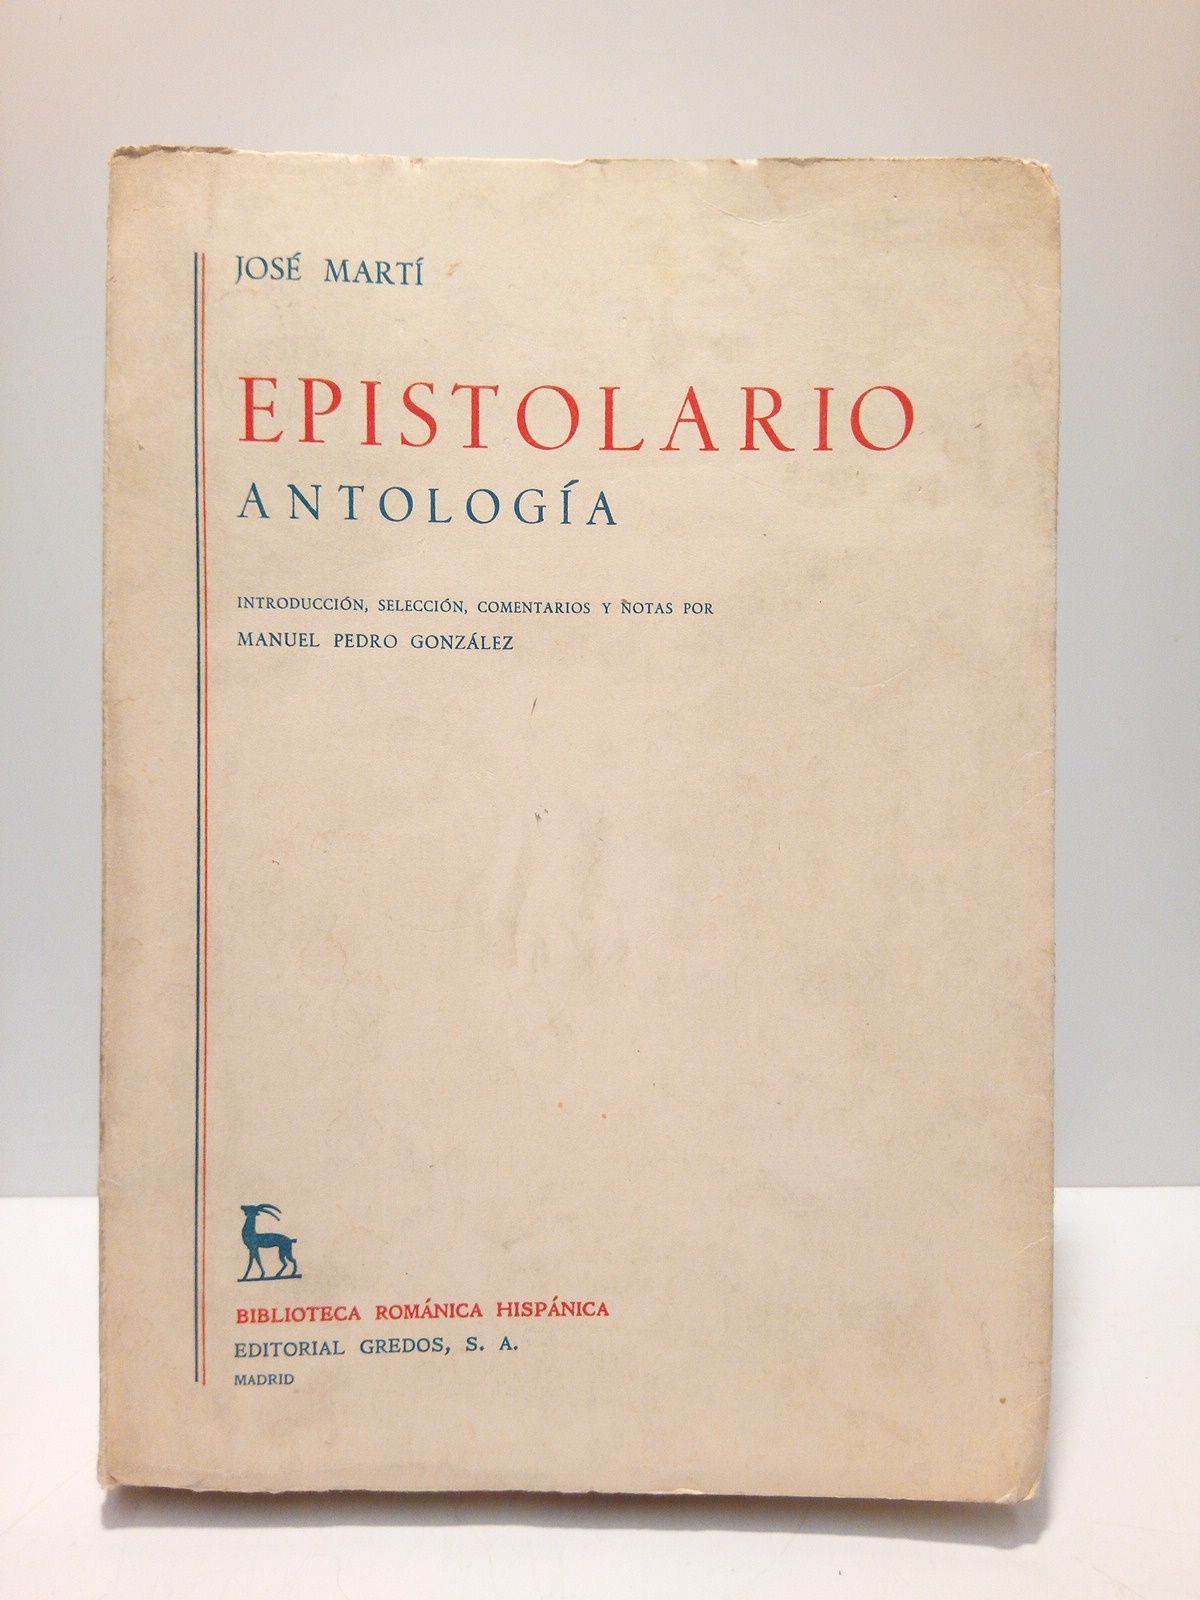 Epistolario. (Antología) / Introducción, selección, comentarios y notas por Manuel Pedro González - MARTI, José